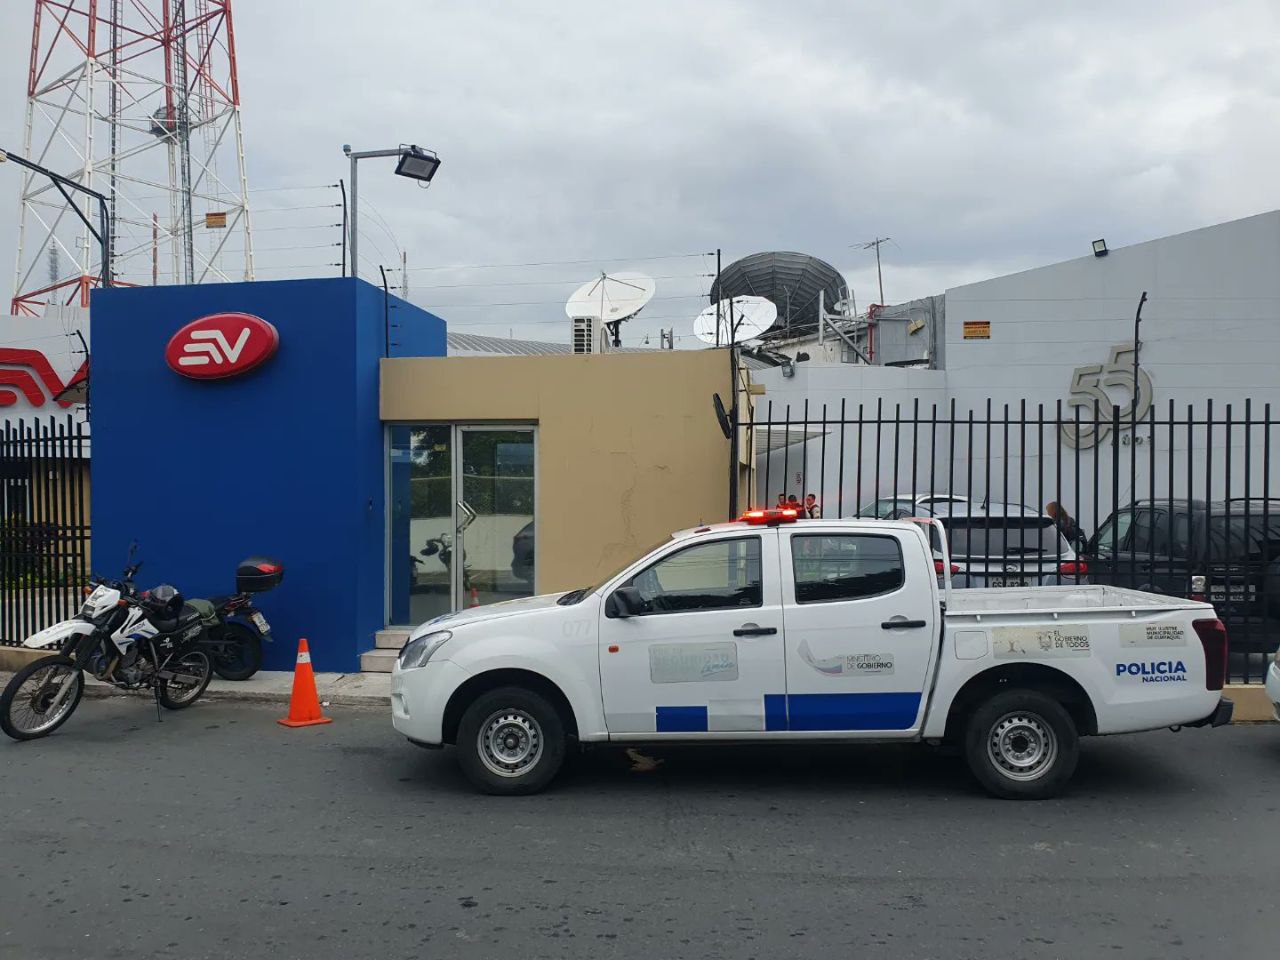 El periodista Lenín Artieda sufrió un atentado en la sede de Ecuavisa, en Guayaquil. (Twitter/ Paúl Tutiven)